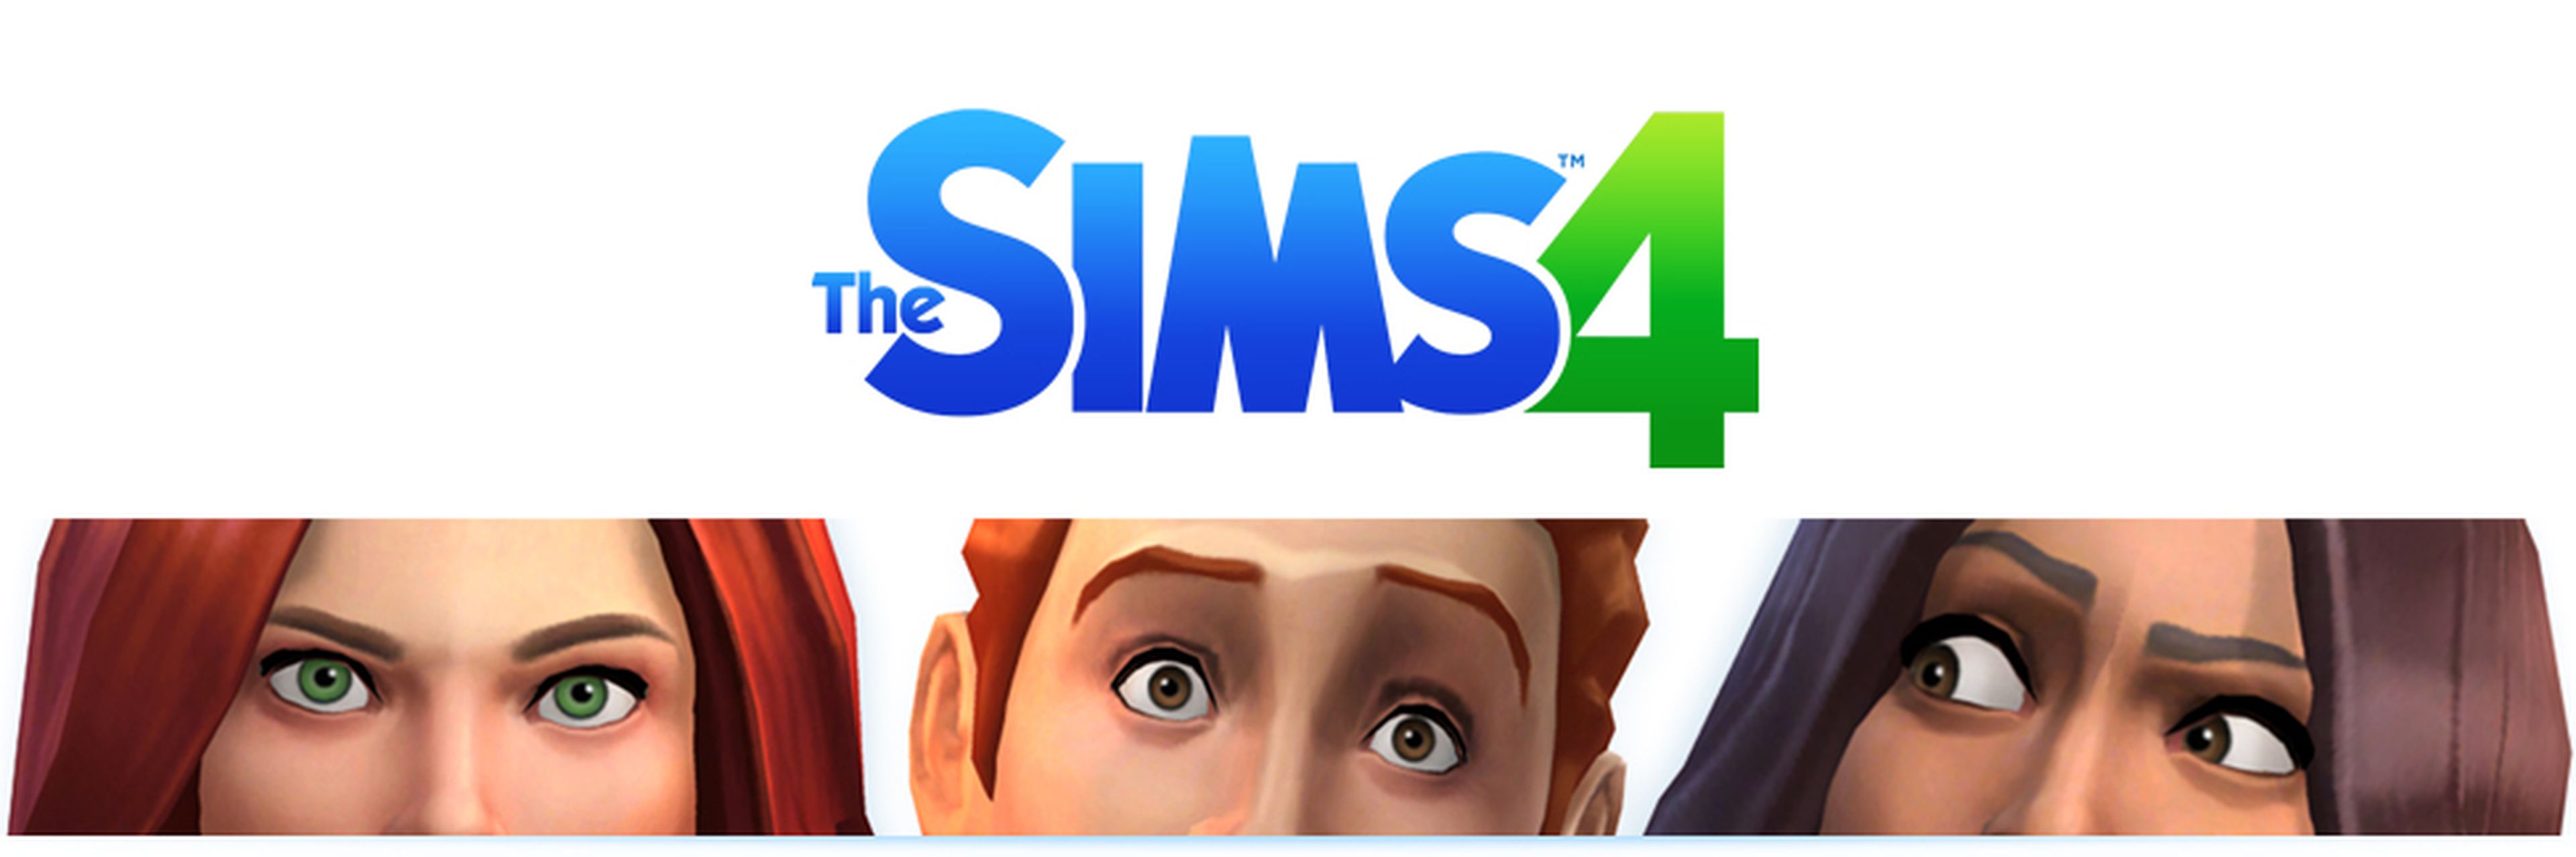 E3 2013: Los Sims 4 no se presentaron